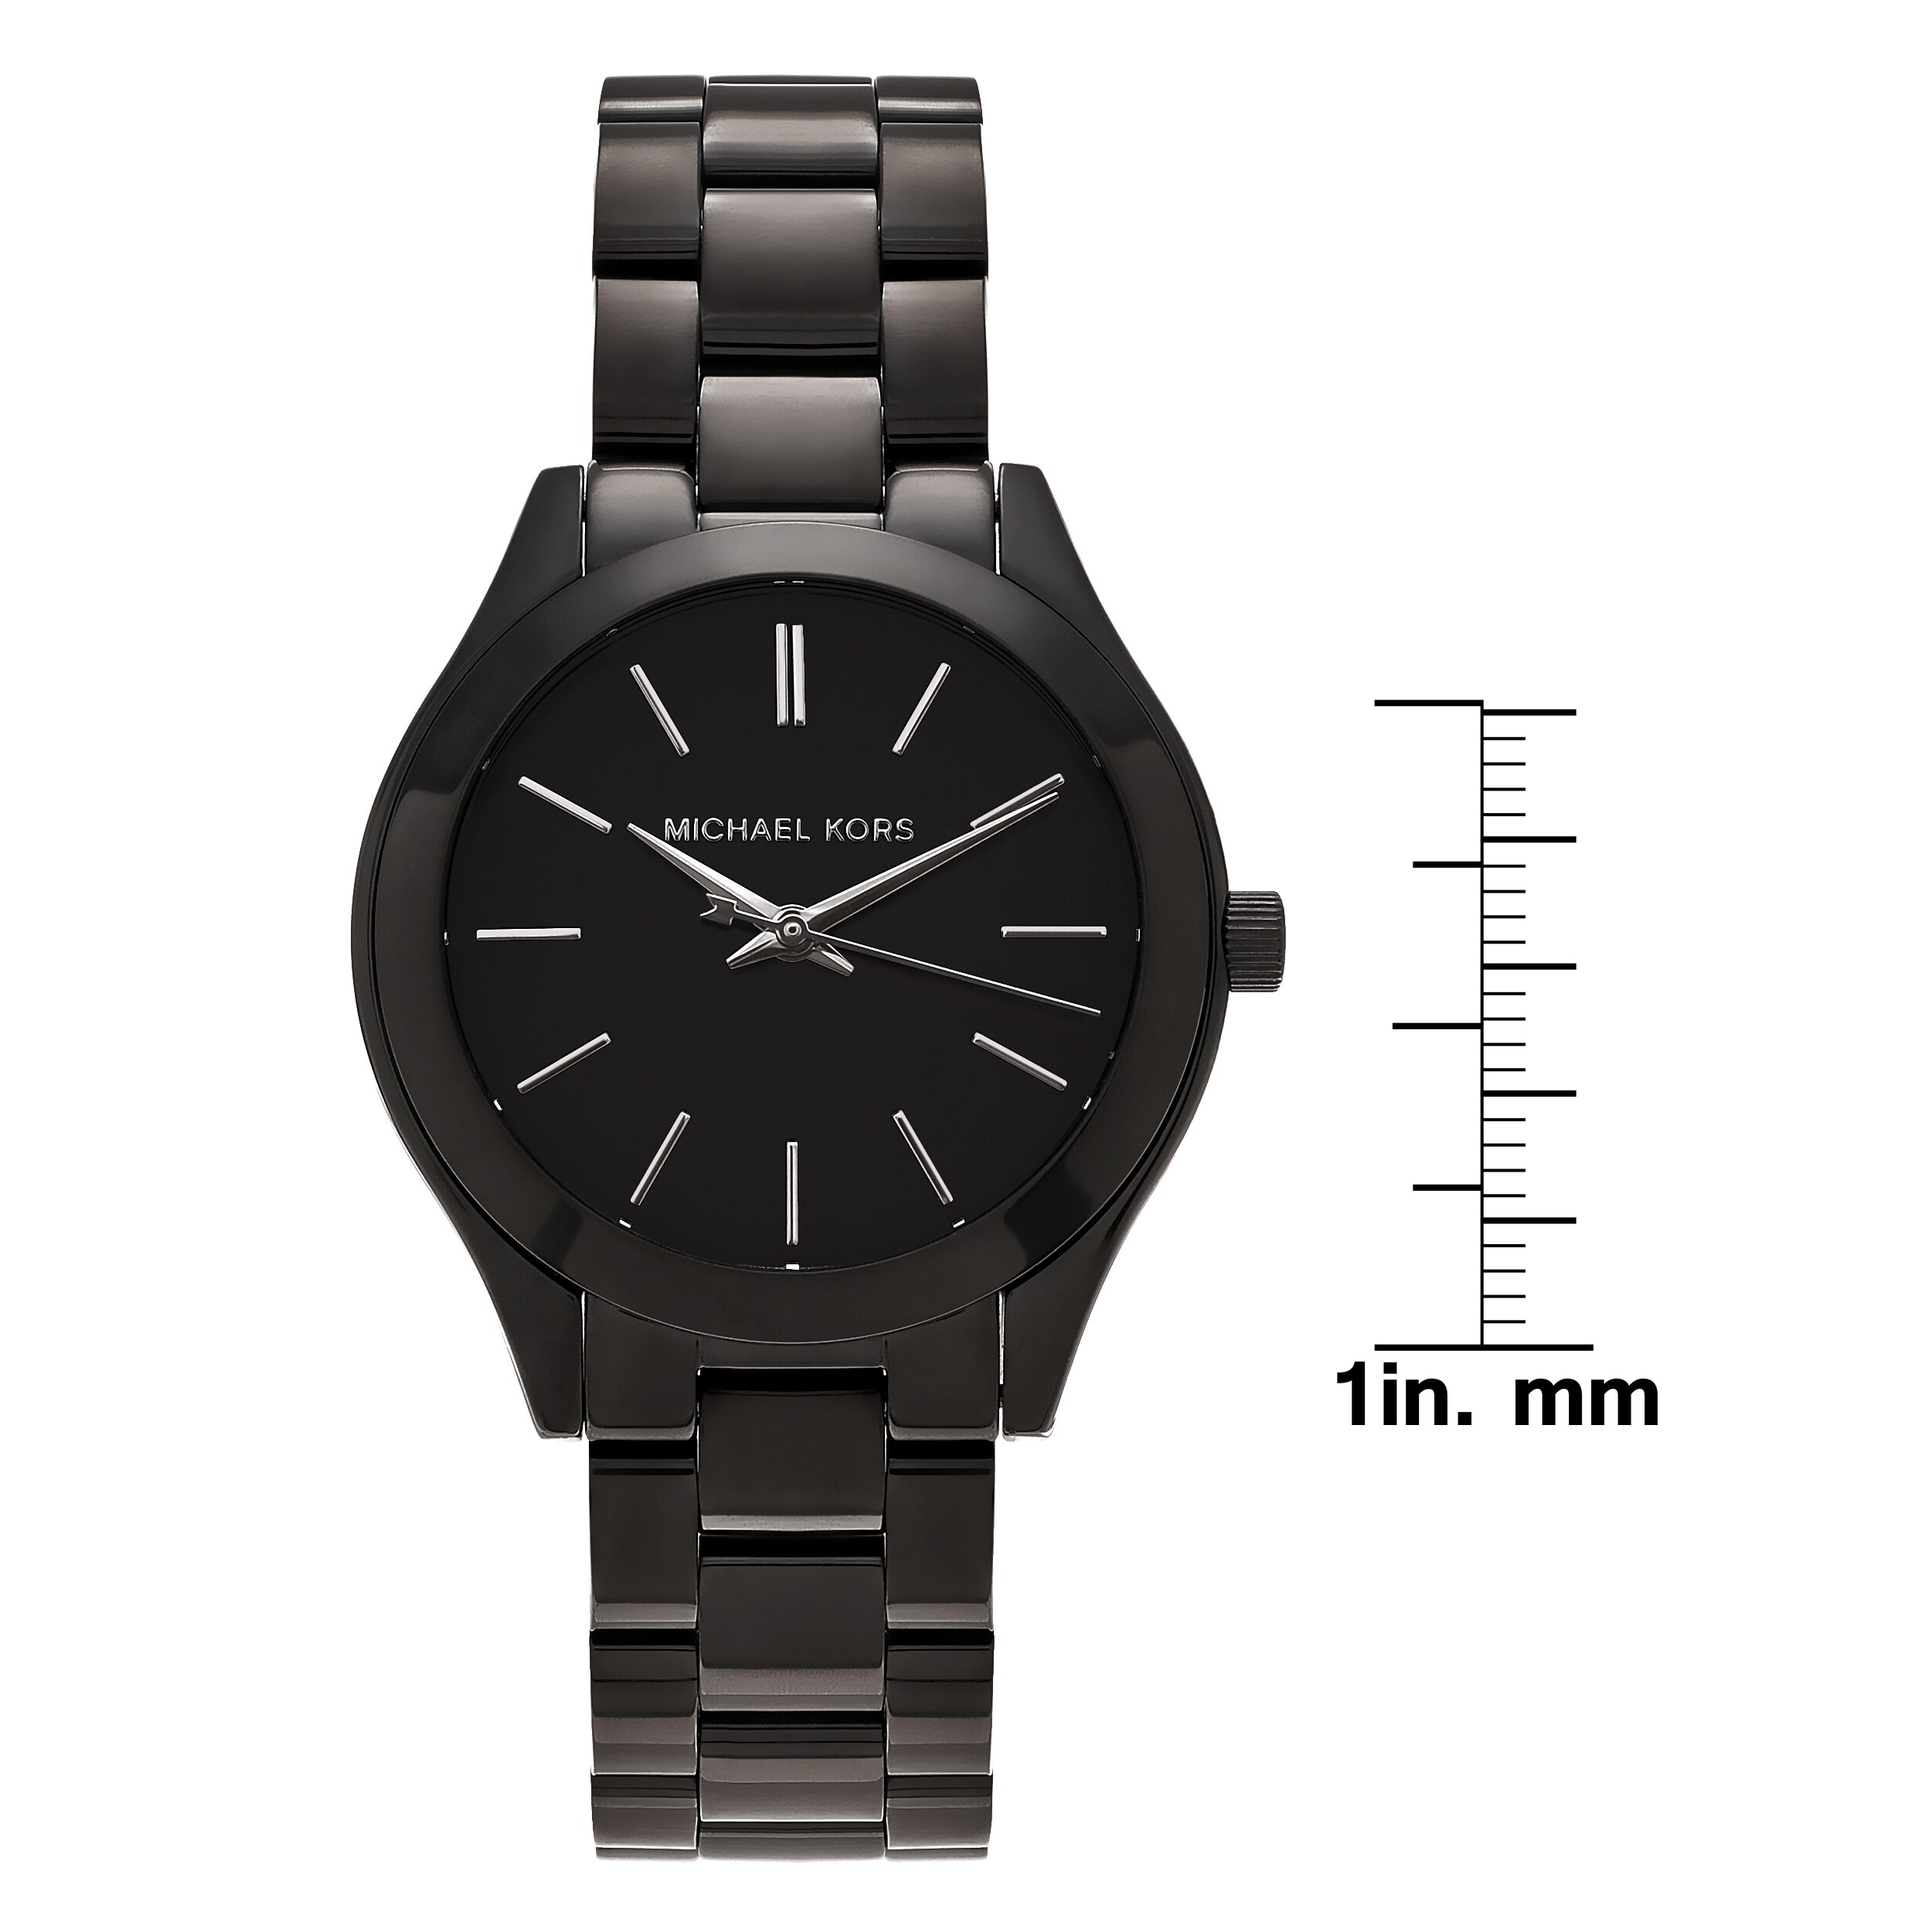 mk3587 watch